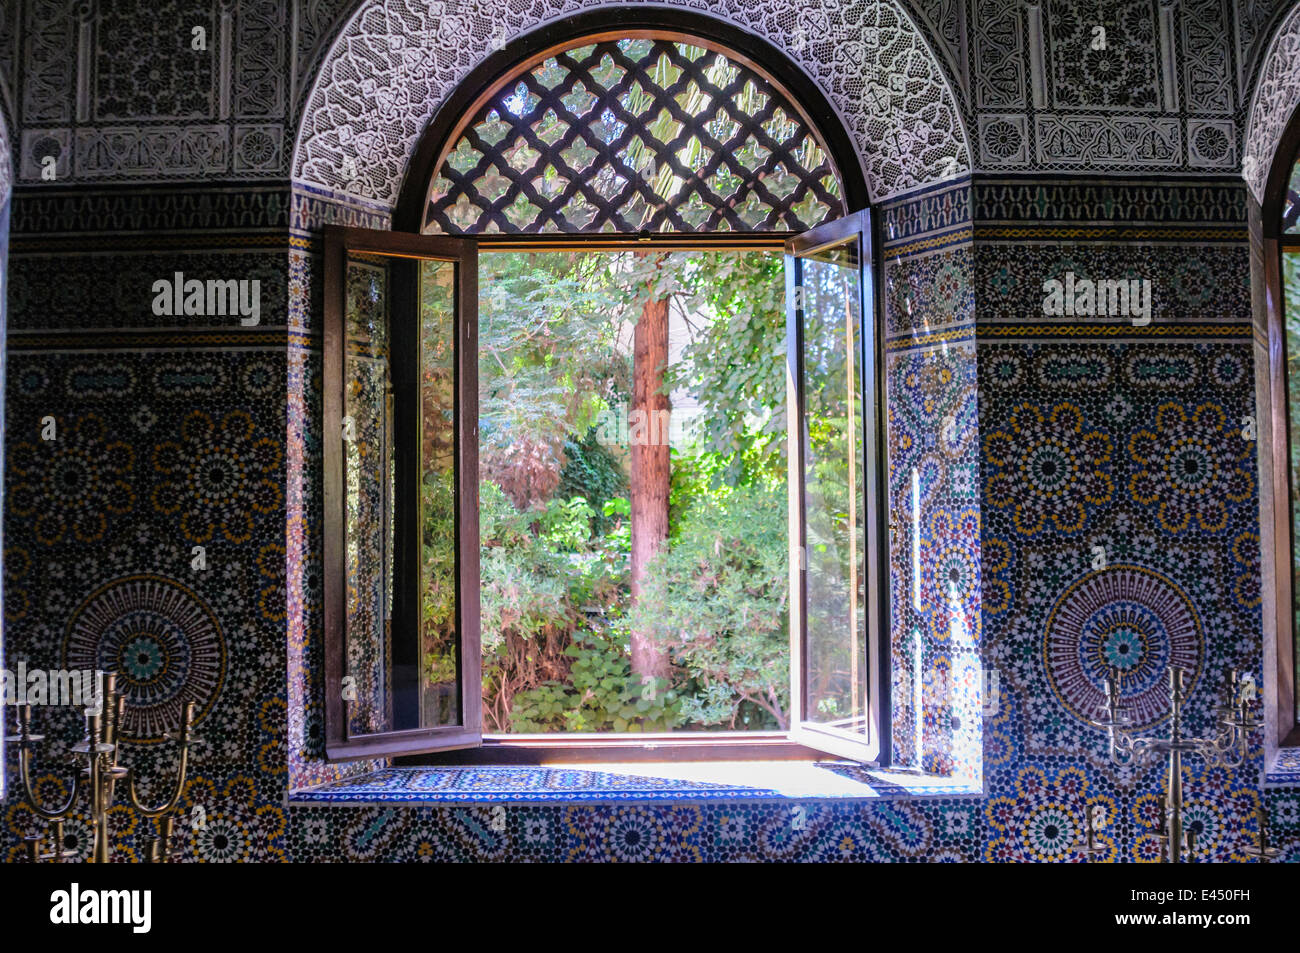 Ornati di piastrelle di ceramica sulla parete intorno a una finestra che guarda fuori in un giardino di una casa marocchina, Marrakech, Marocco Foto Stock